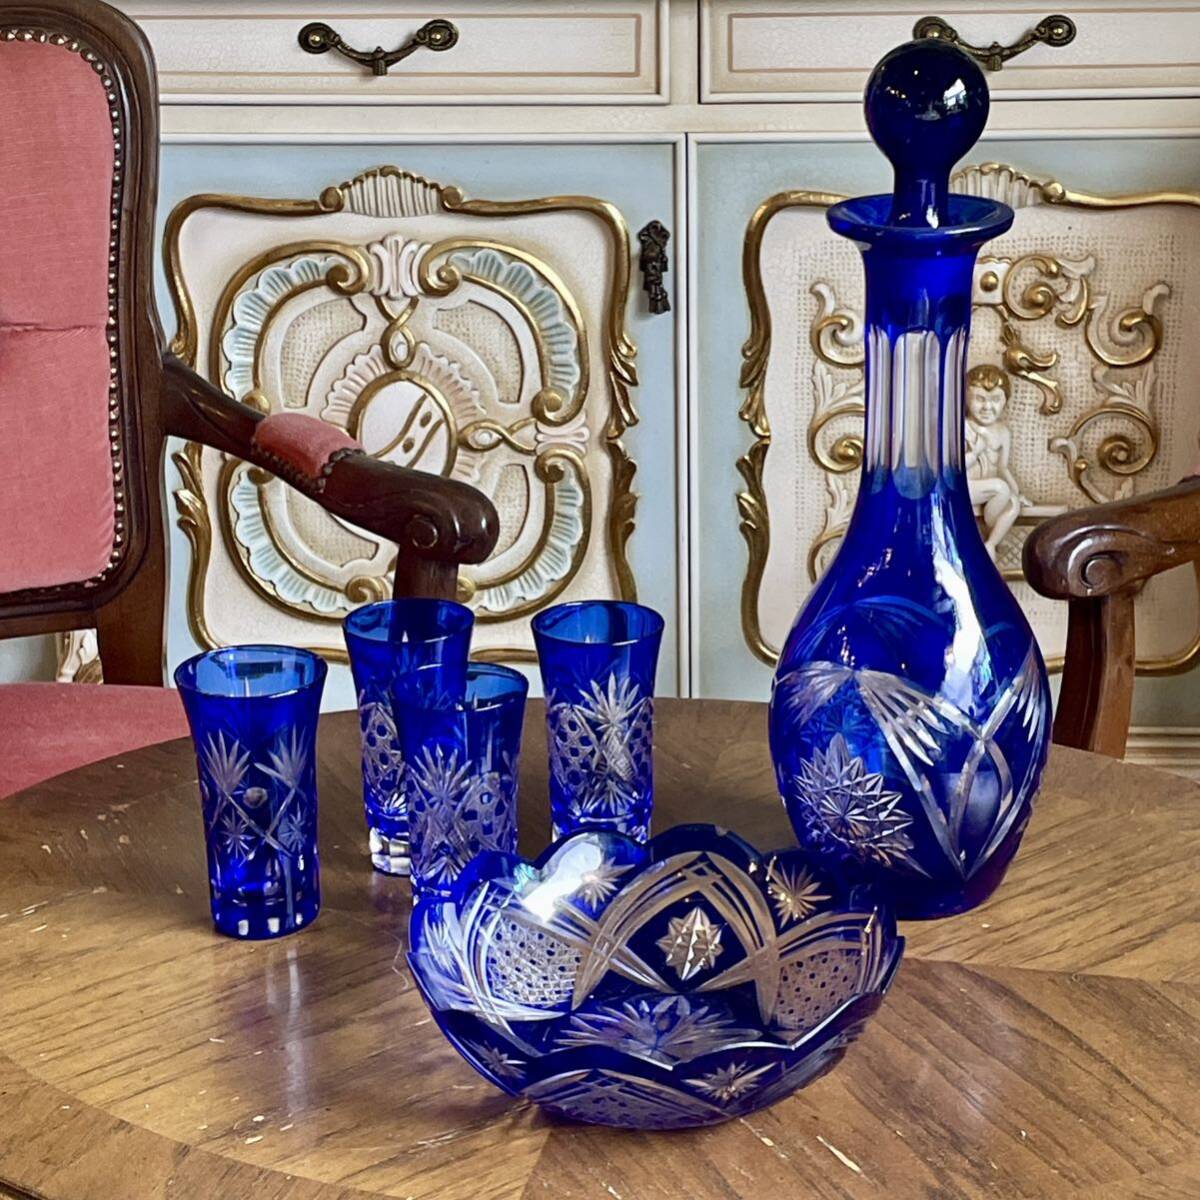 r211 美しいカッティングと色鮮やかなブルーが優雅 切子 ガラスセット デキャンタ グラス ガラスボウル 酒器 テーブルを華やかに飾る洋食器_画像1